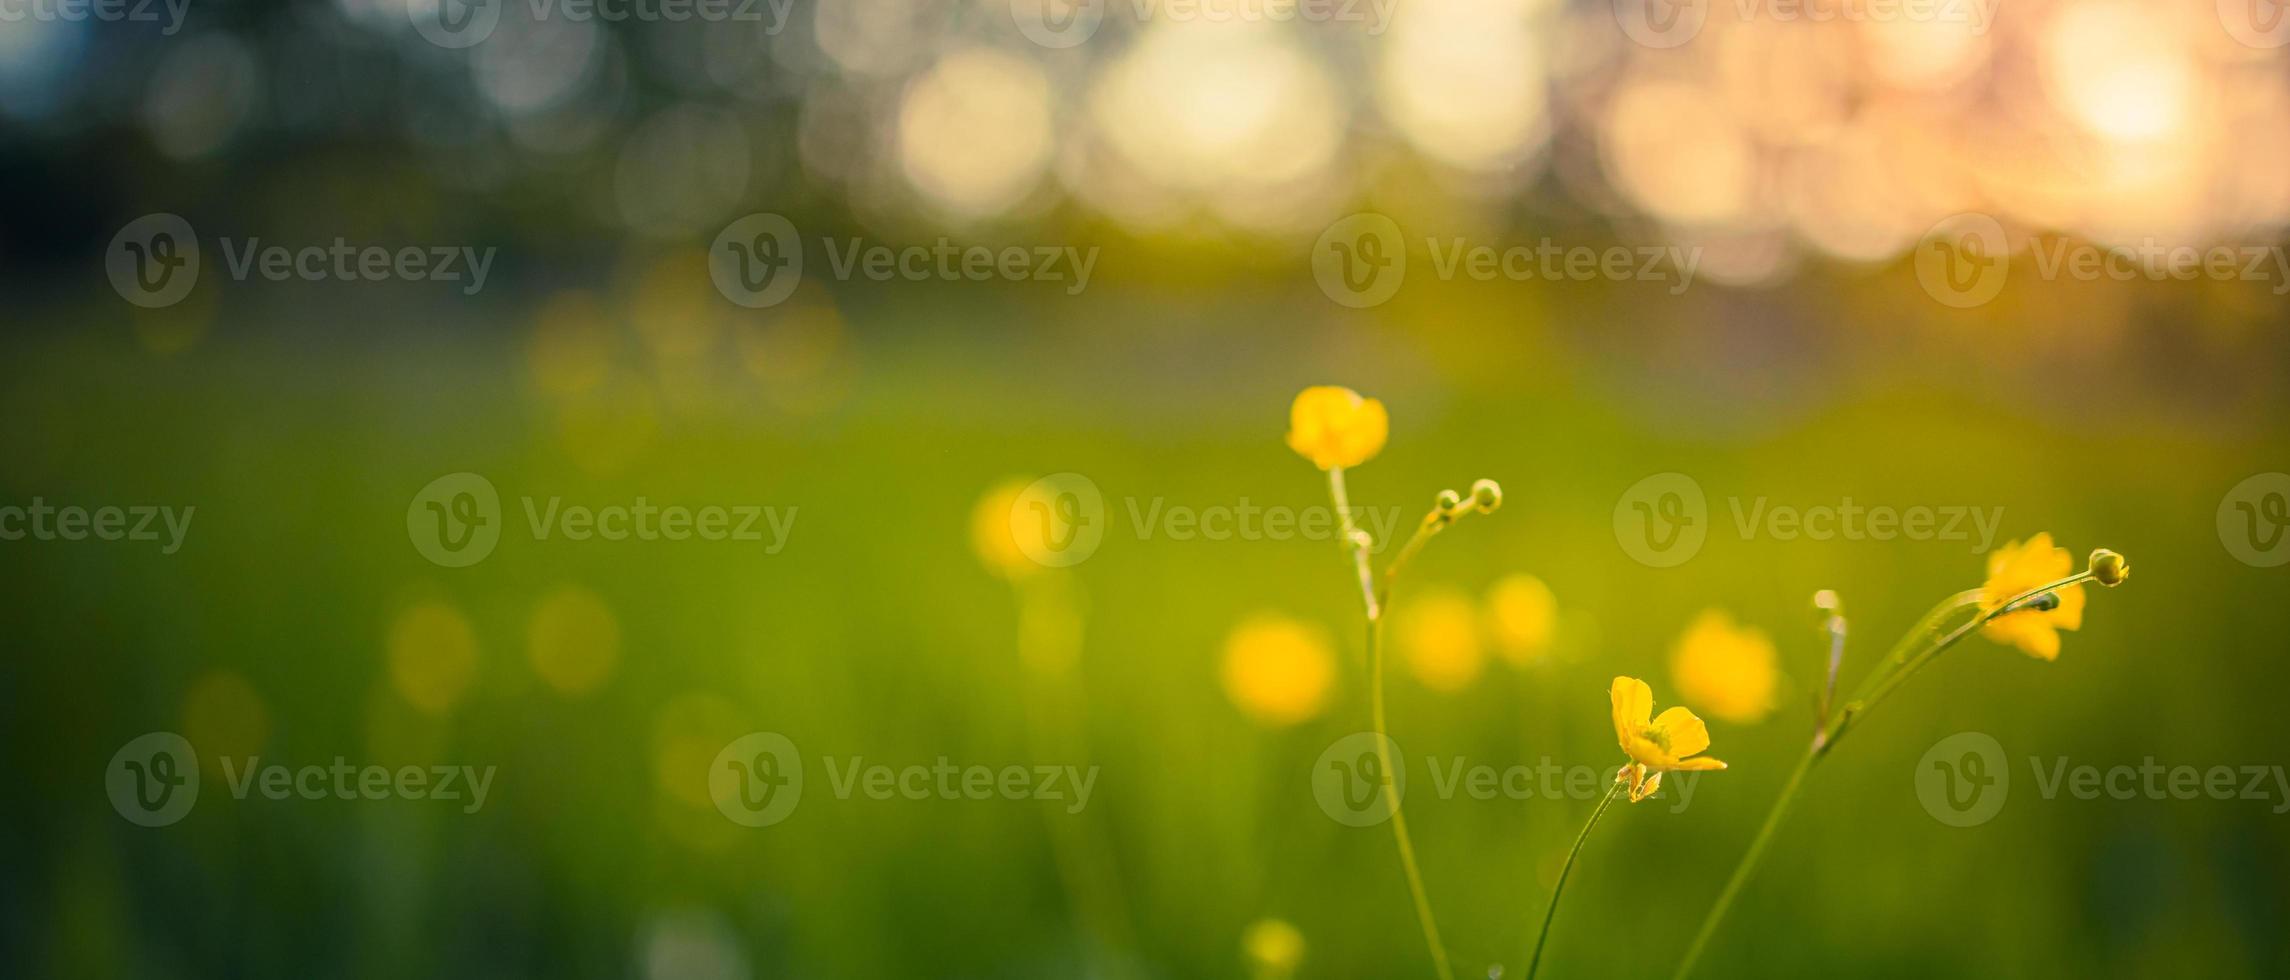 champ panoramique de fleurs jaunes et pré vert au printemps ou soir d'été au coucher du soleil, heure d'or. nature idyllique pittoresque, paysage en gros plan, champ forestier naturel rêveur flou photo